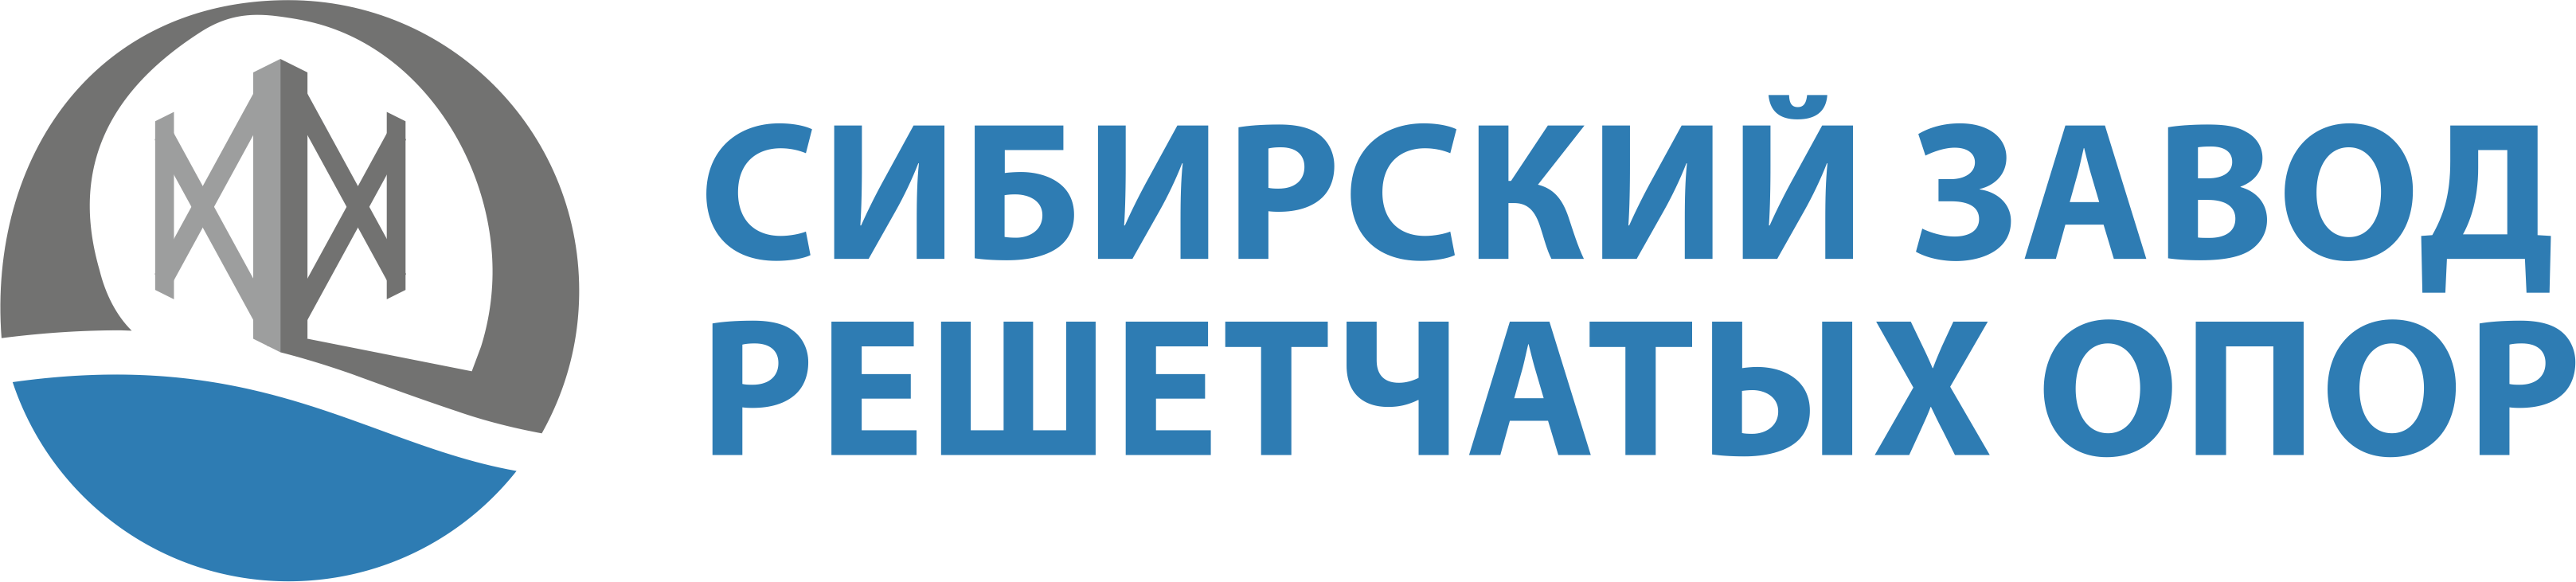 2-szro-logo